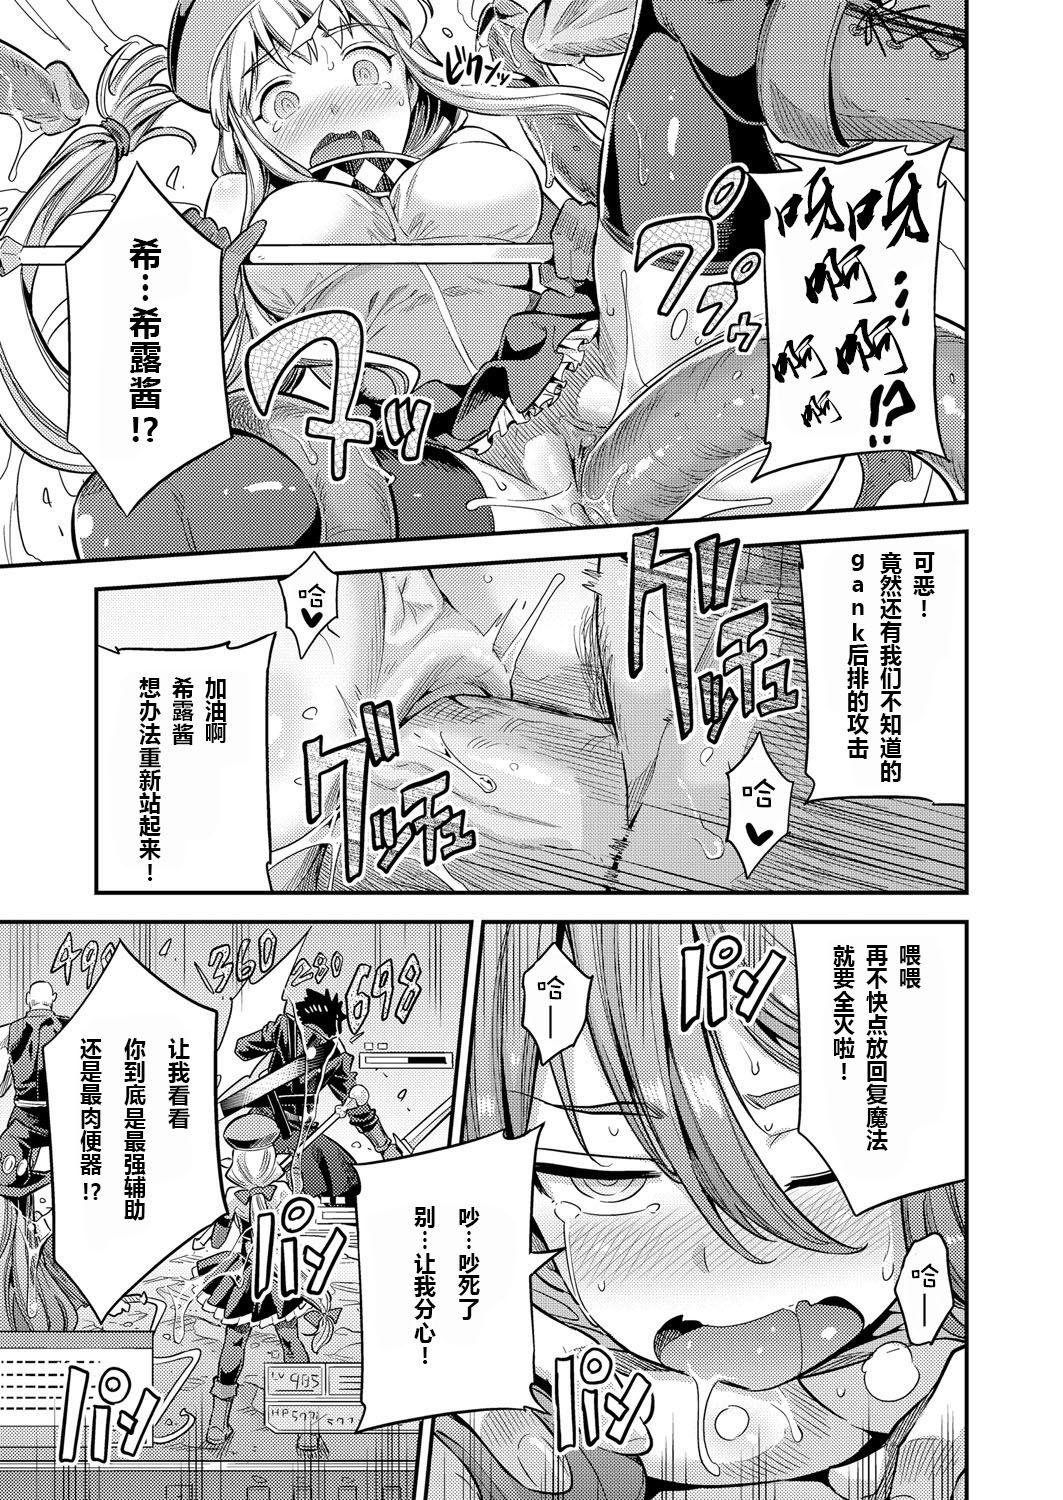 Worship Watashi ga Ittara Mina Shinjau Netoge Haijin wa Tanetsuke Rape saretemo Te ga Hanasenain desu Boss - Page 11